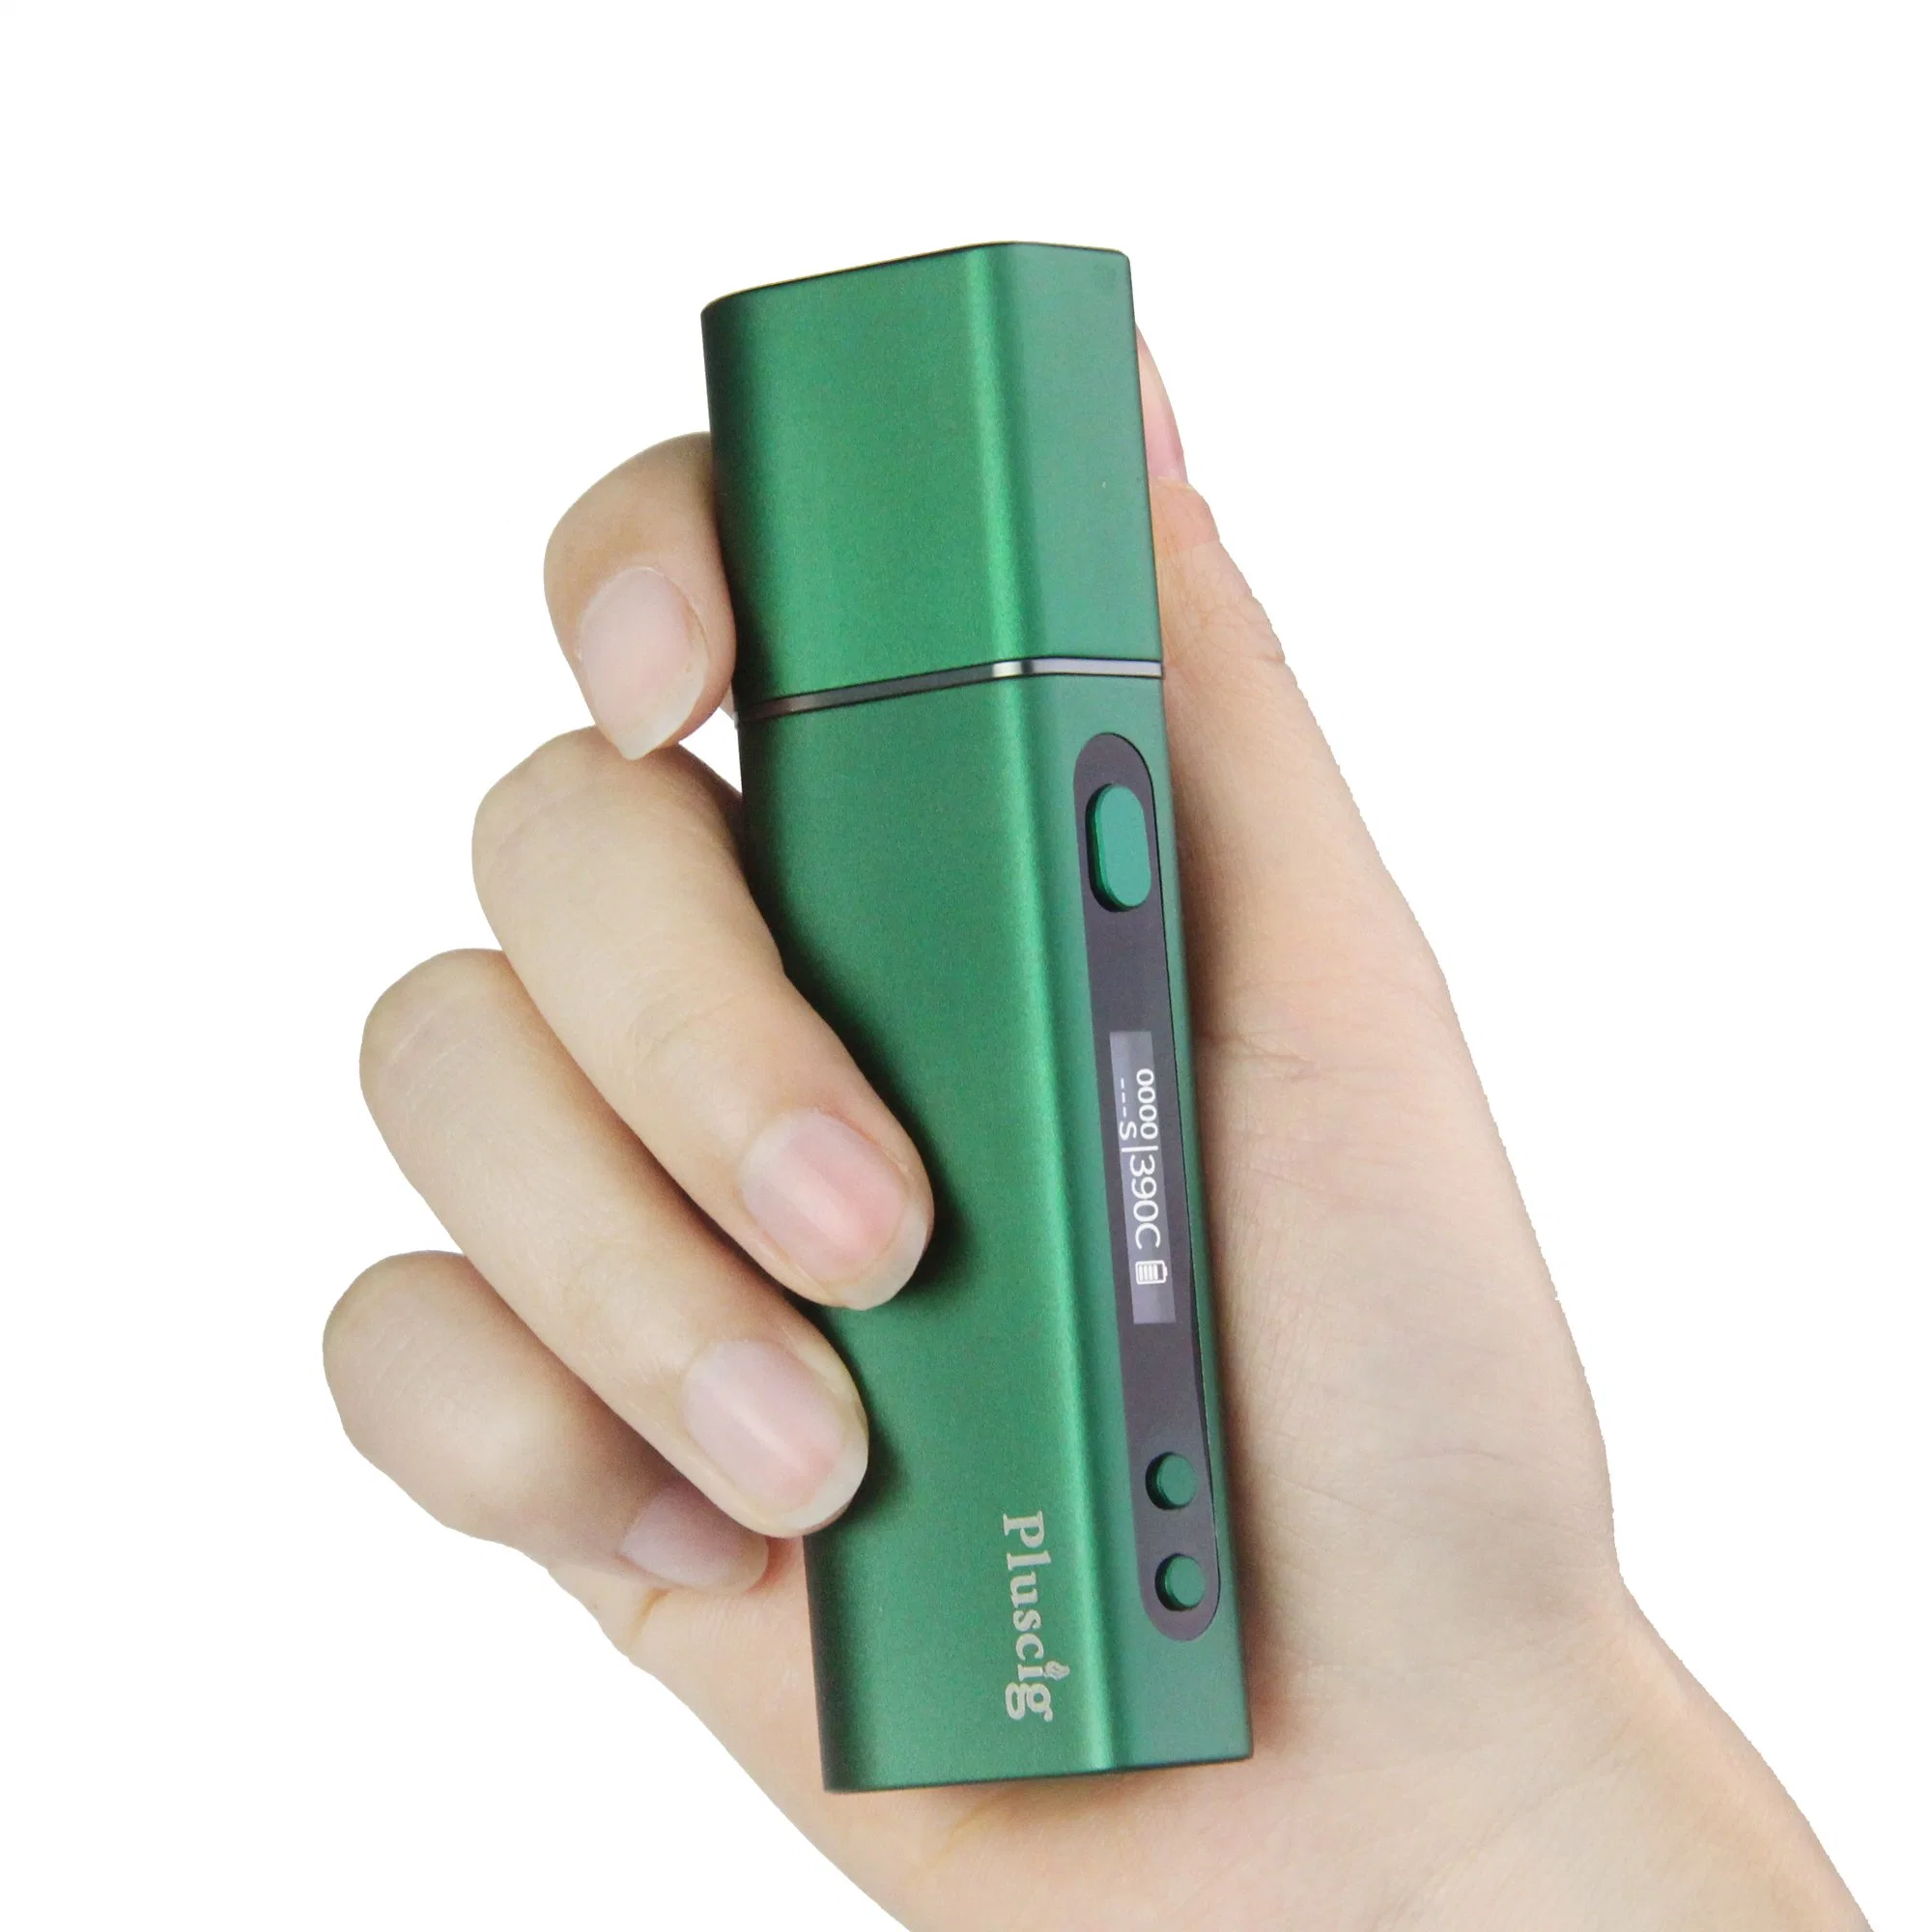 Pluscig S9 E-Cig fumer la cigarette électronique jetable de périphérique